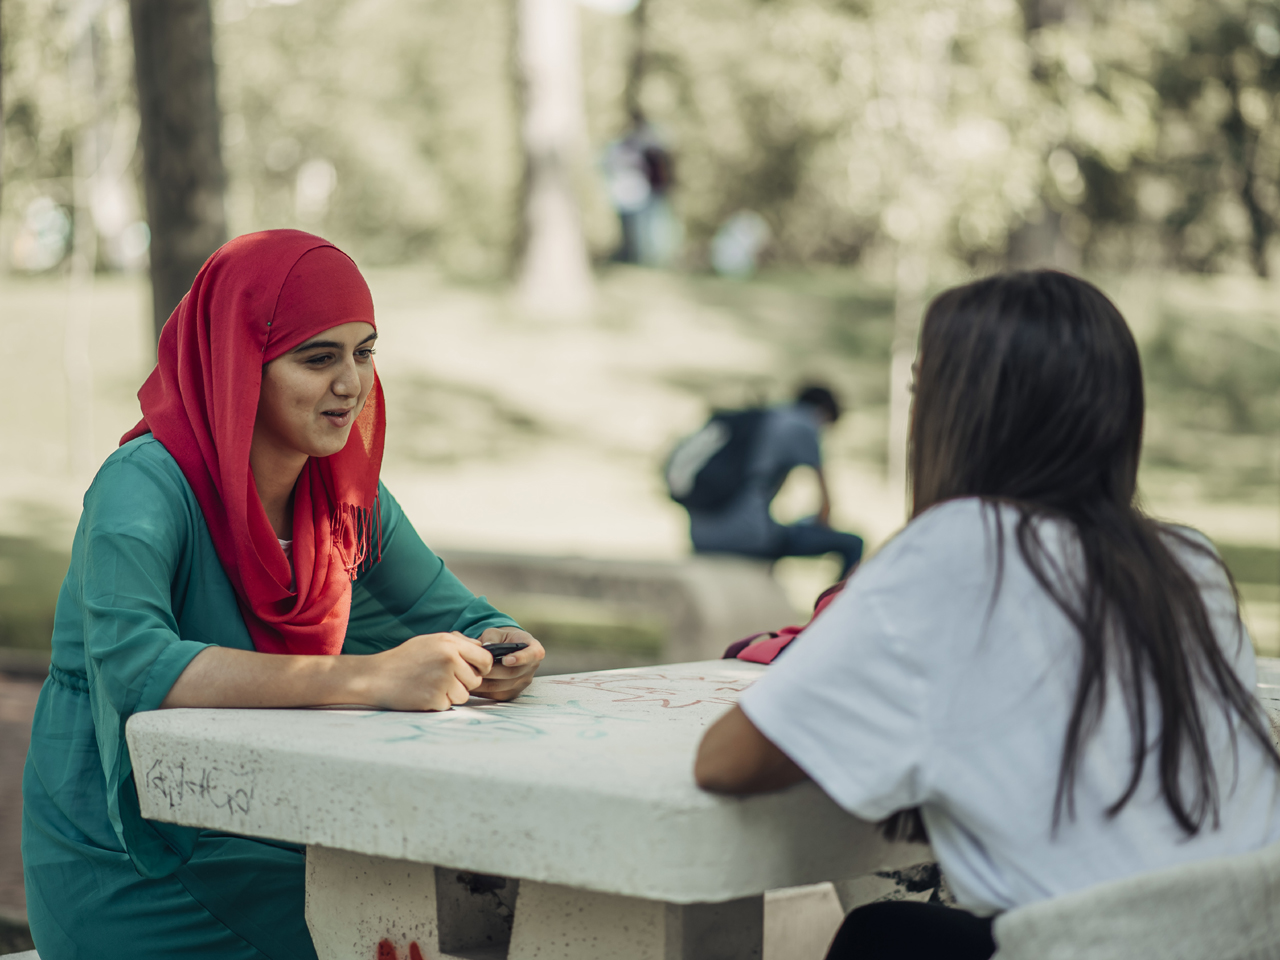 El proyecto busca generar un mayor conocimiento sobre la realidad de los y las jóvenes musulmanes